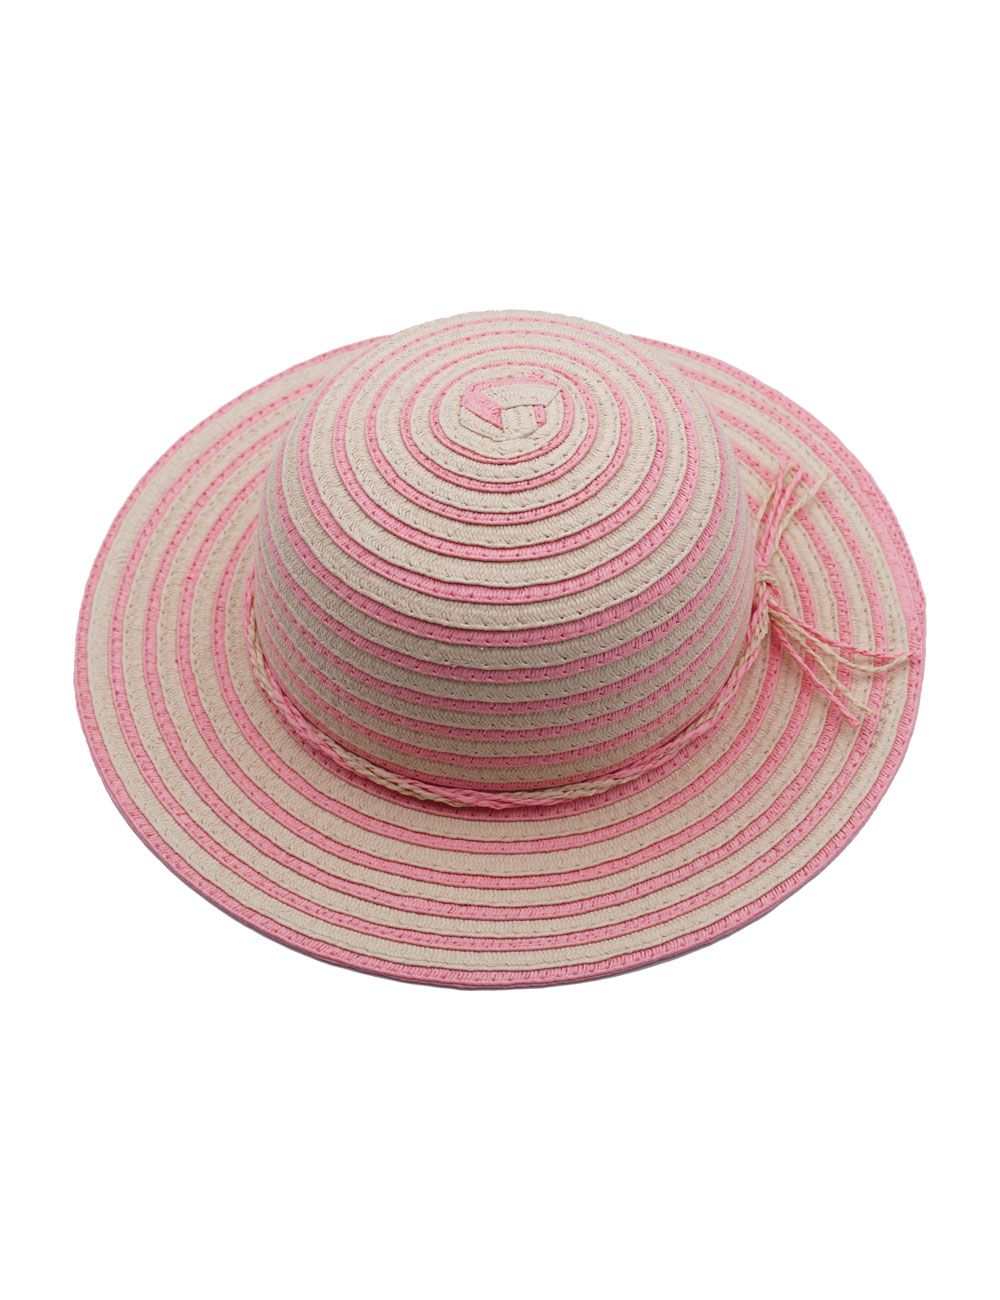 Maximo zonnehoed roze Meisjes ( - Meisjes hoed roze strepen23503-983100) - Steps